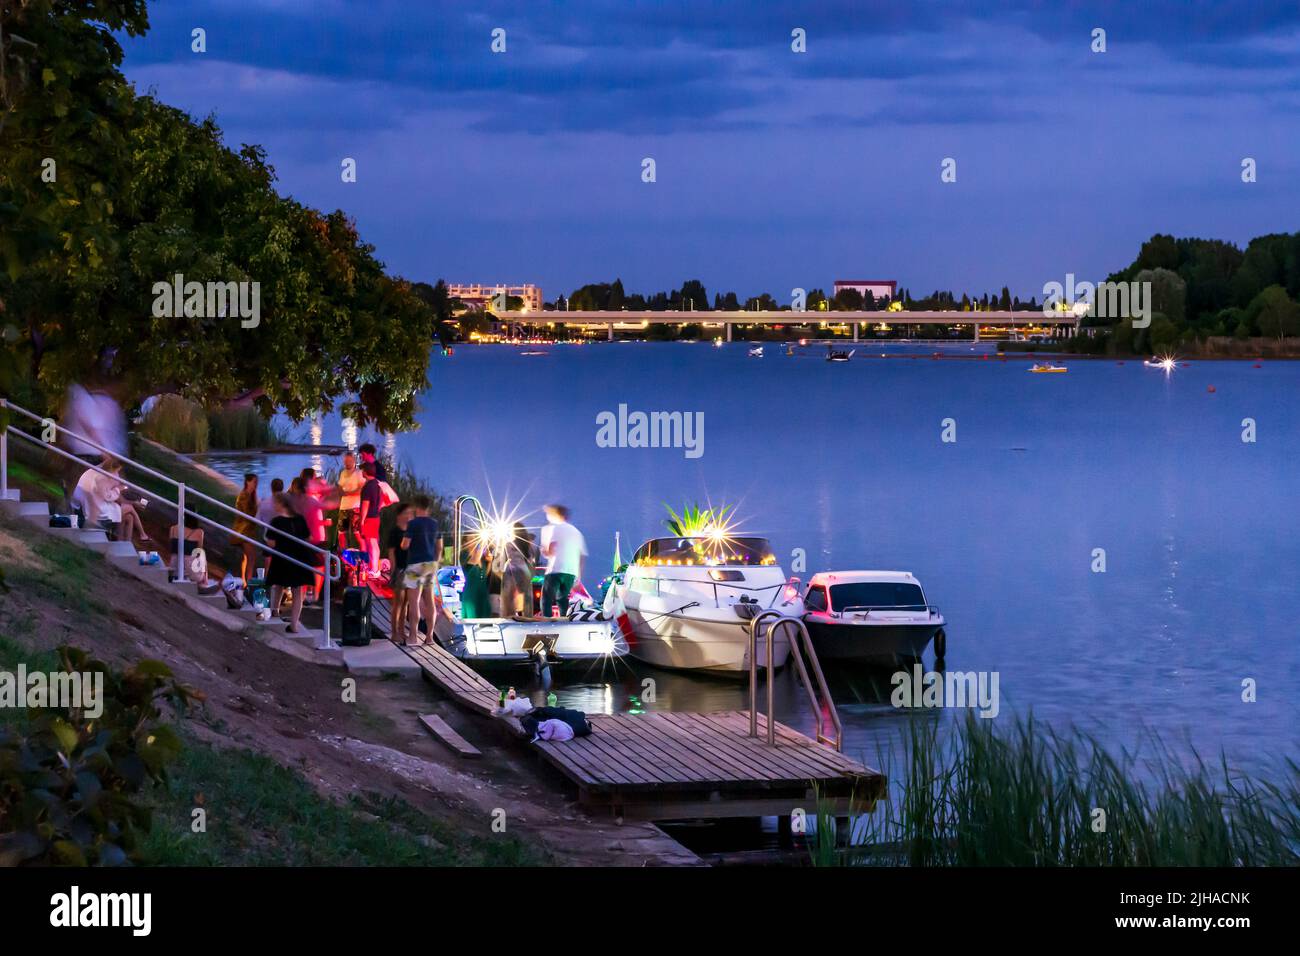 Viena: Lago oxbow Alte Donau (Danubio antiguo), puesta de sol, fiesta privada en los barcos en 22. Donaustadt, Viena, Austria Foto de stock